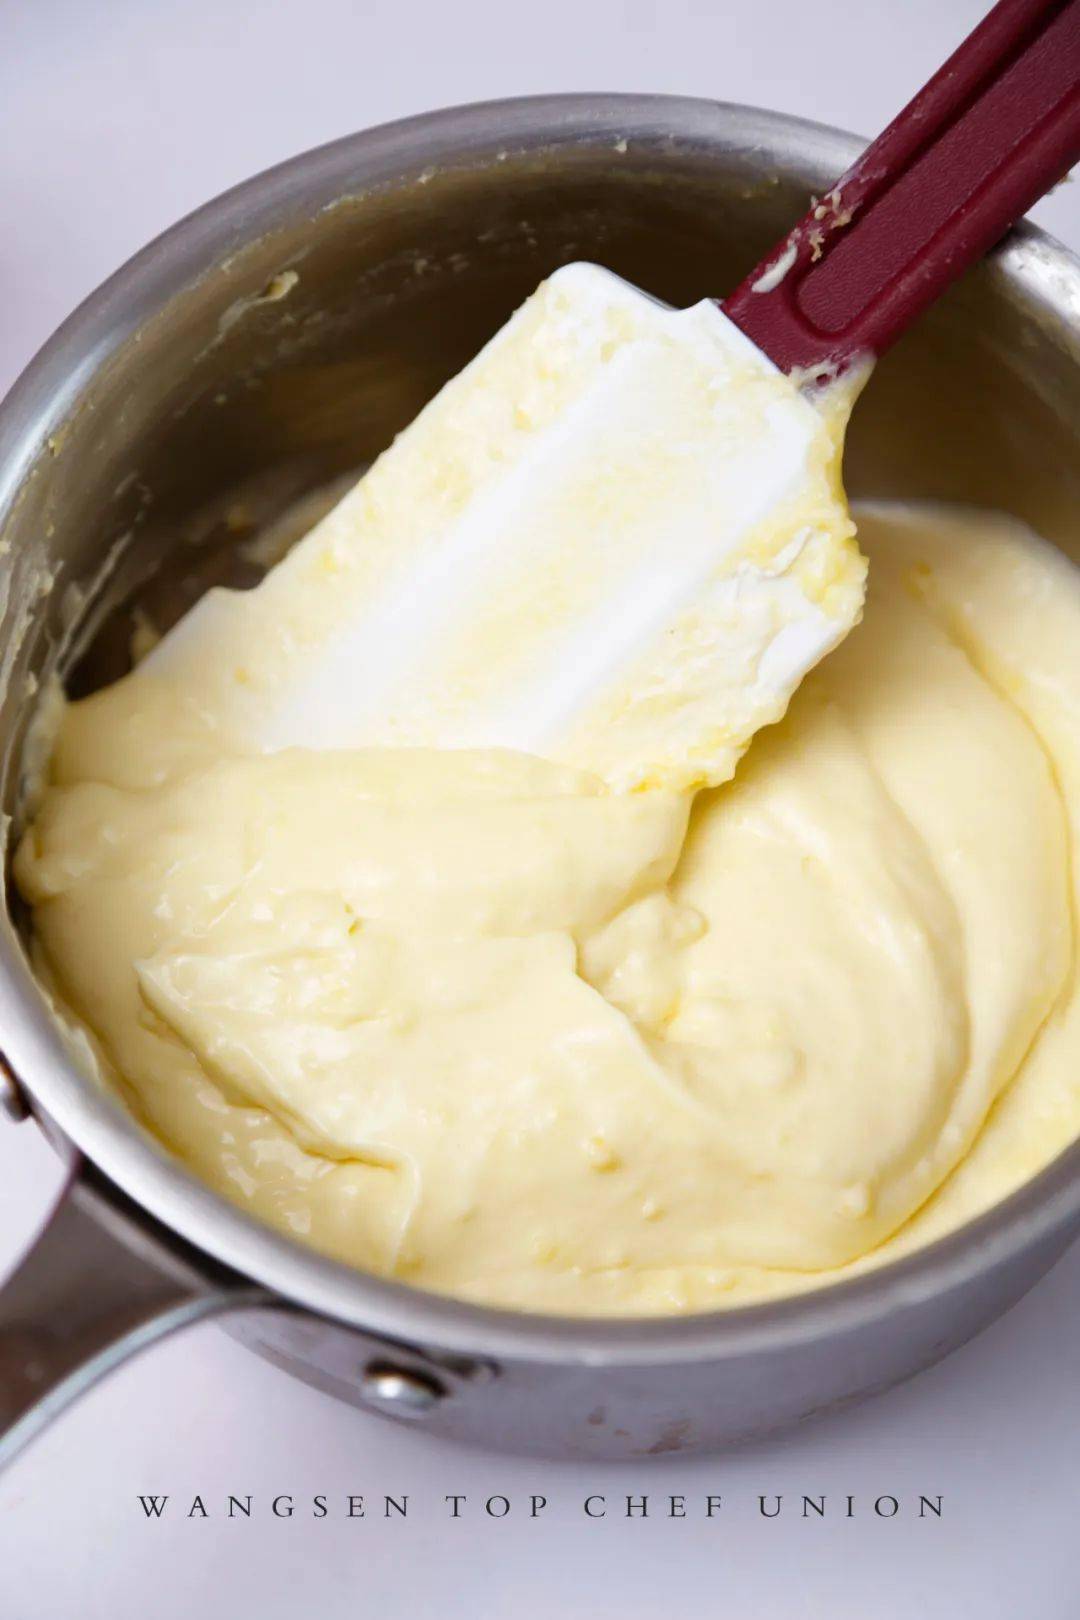 卡仕达奶油酱（全蛋版）+怎么做_卡仕达奶油酱（全蛋版）+的做法_超爱鬼故事的爱罗_豆果美食